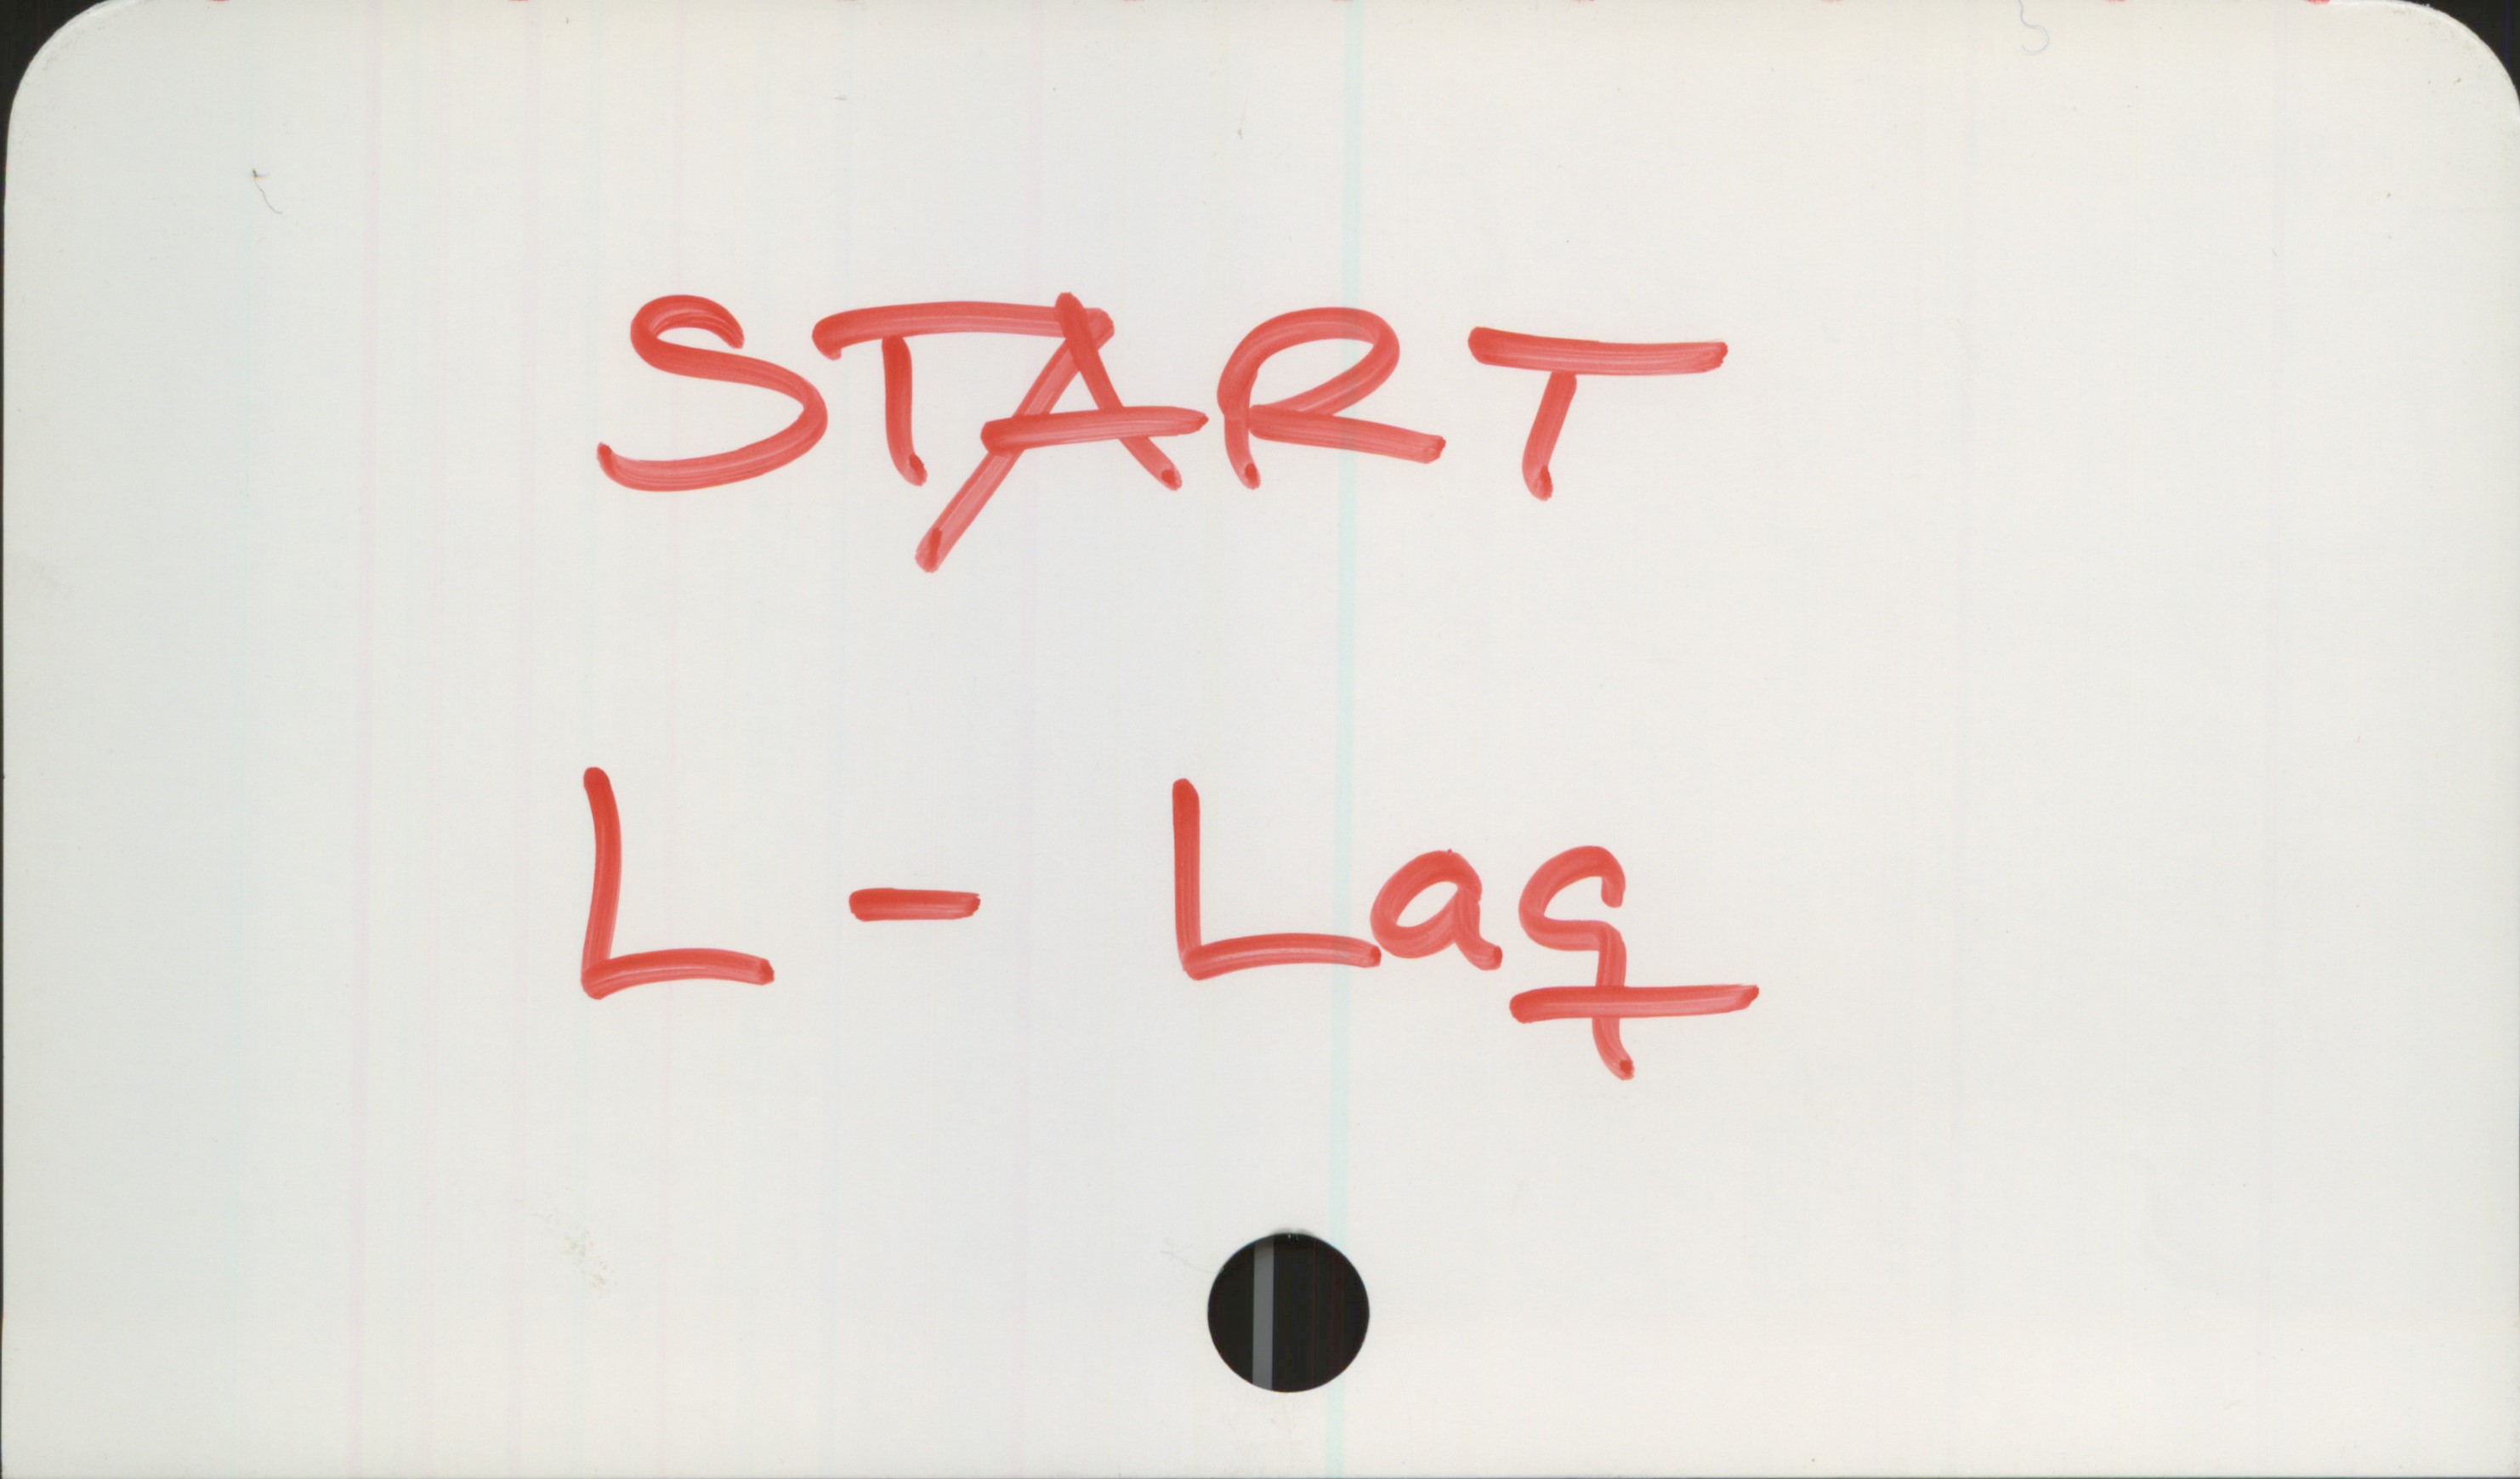 START L-Laq START

L. - Laq